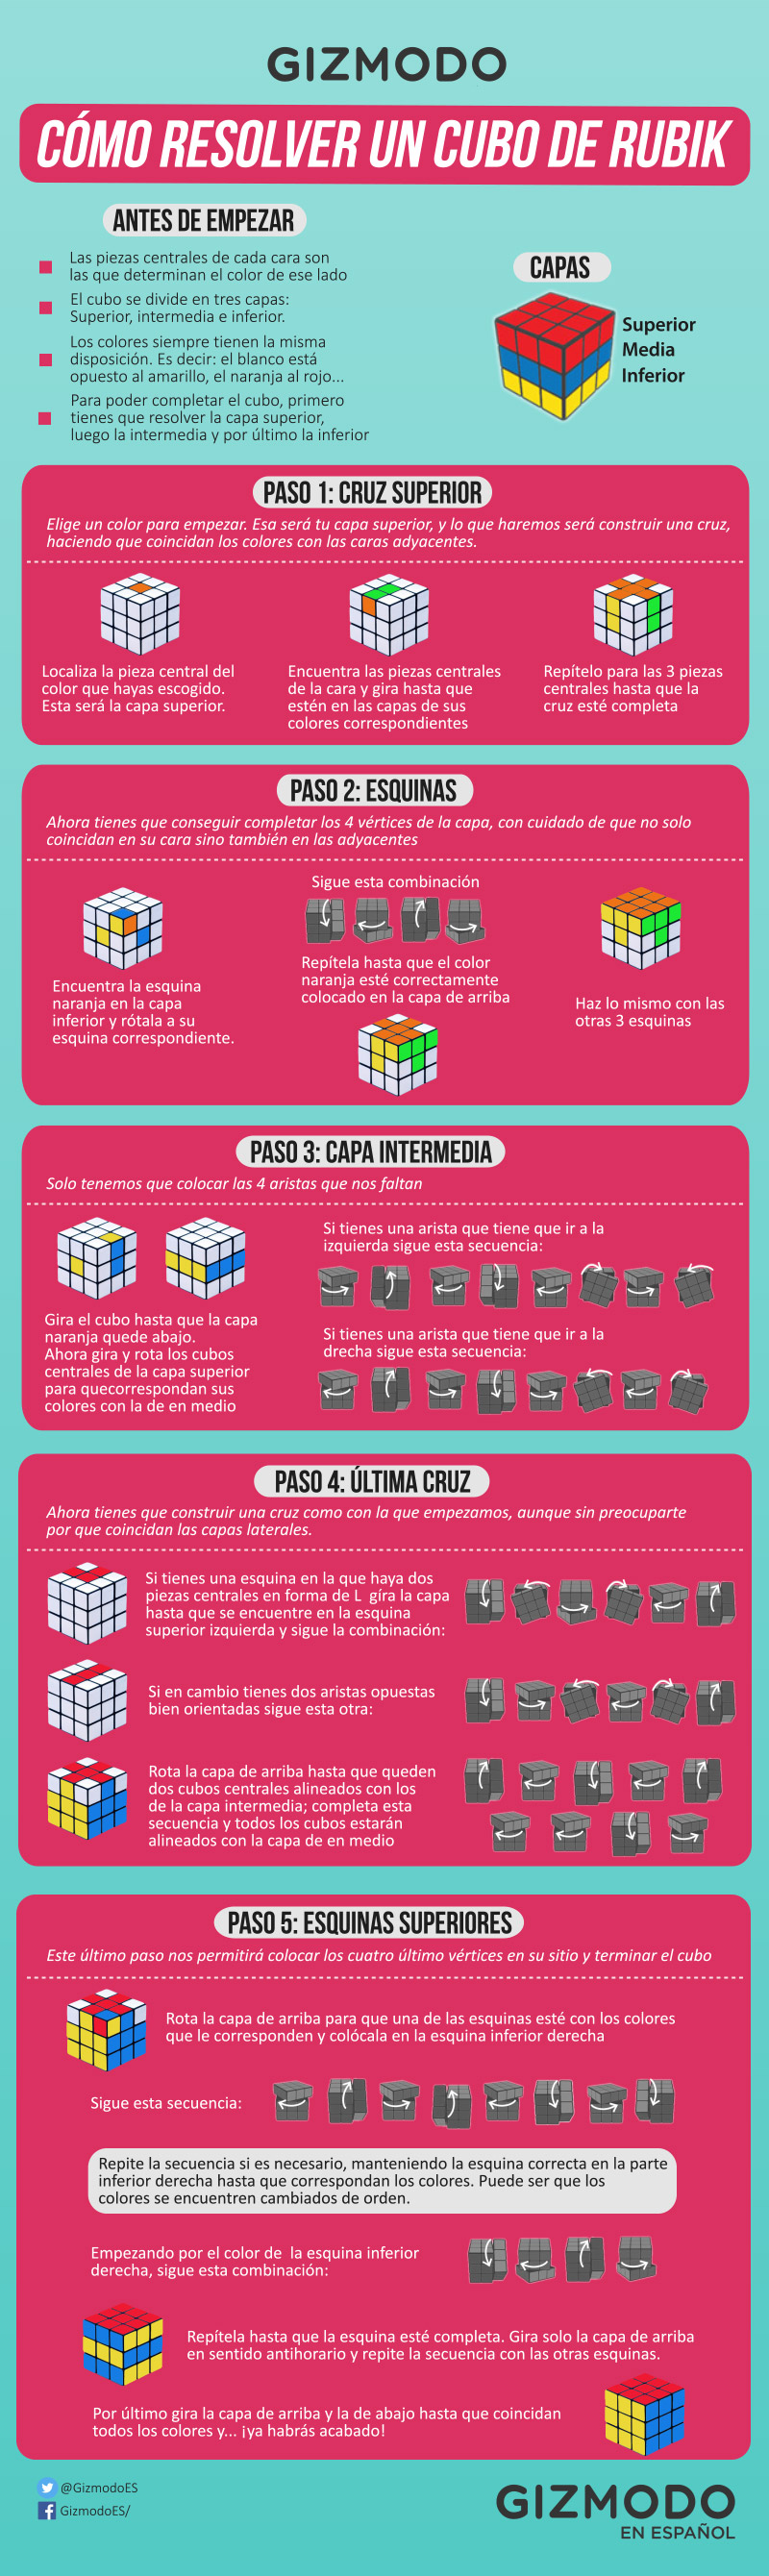 Cómo resolver el cubo de Rubik en cinco pasos, explicado en una genial infografía